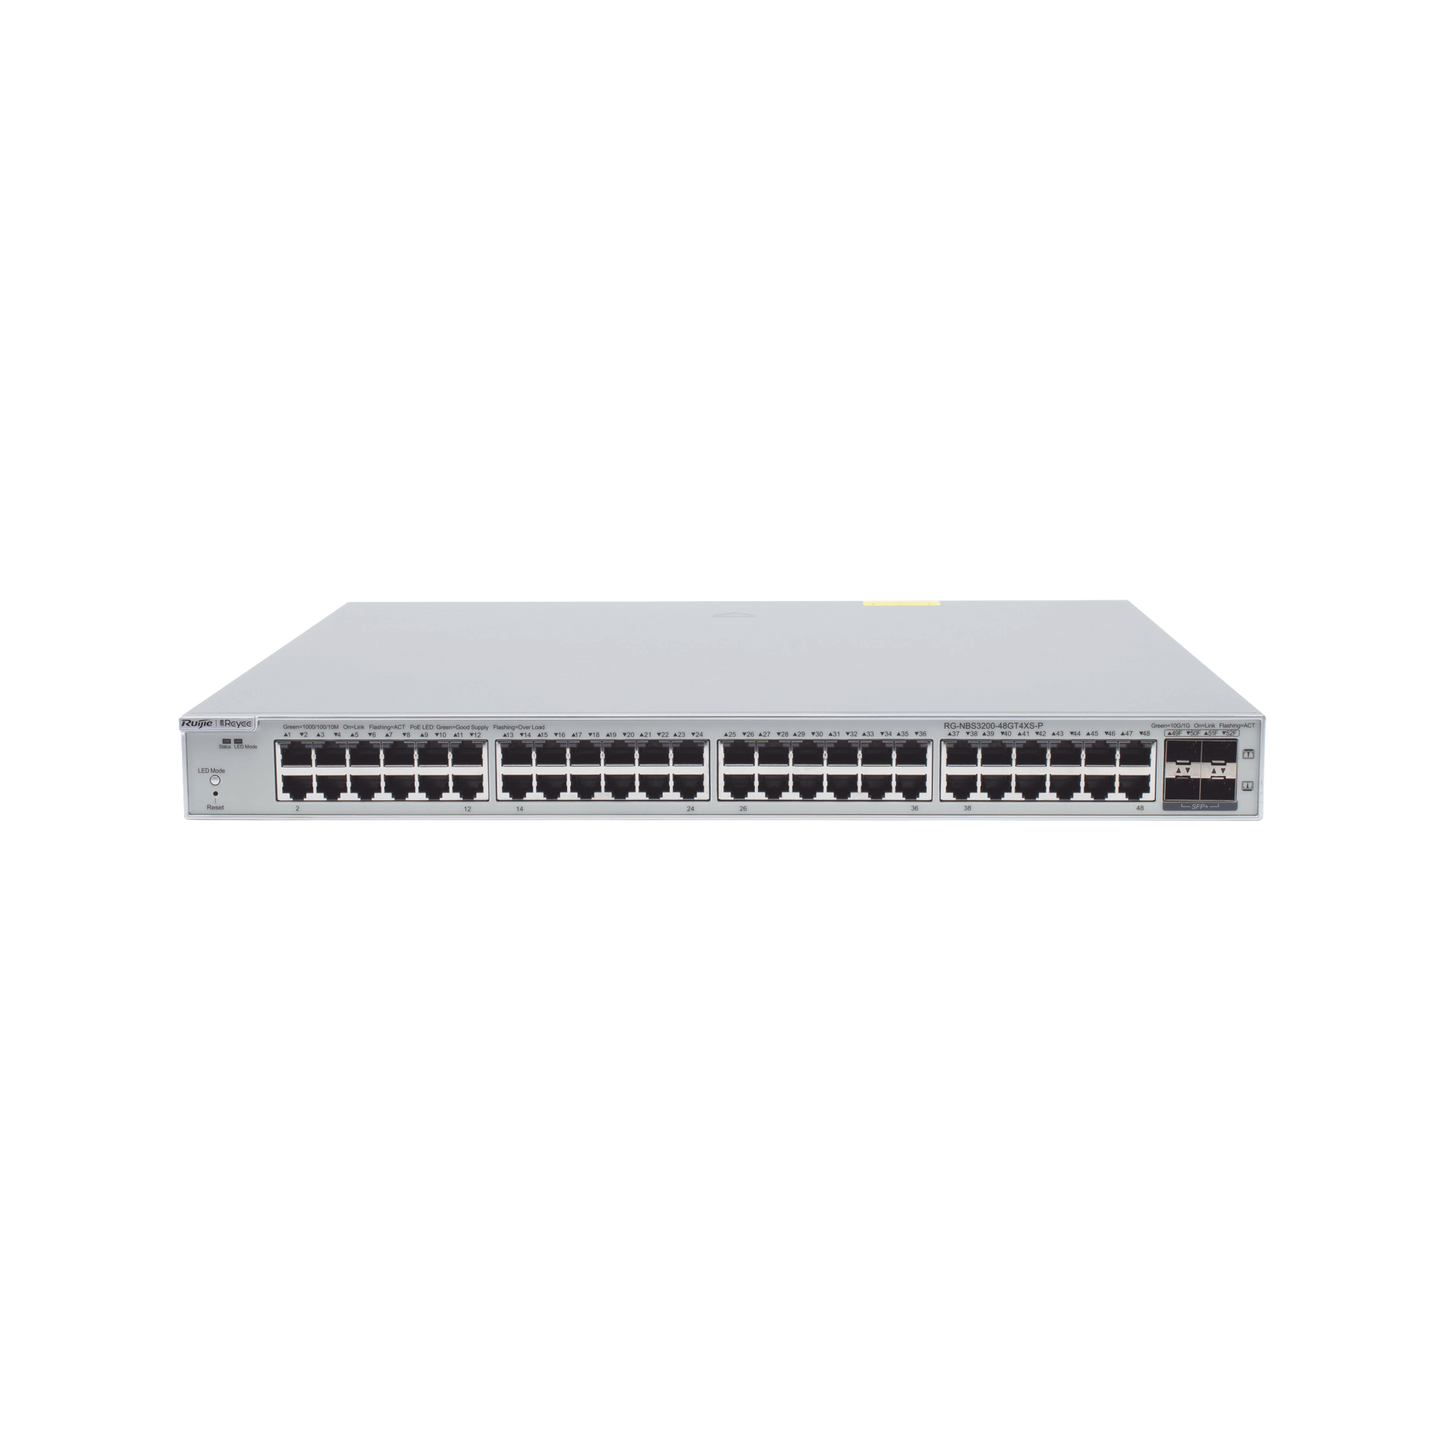 Switch Administrable PoE Capa 2+ Plus, con 48 puertos Gigabit PoE 802.3af/at + 4 SFP+ para fibra 10Gb, gestión gratuita desde la nube, 370w